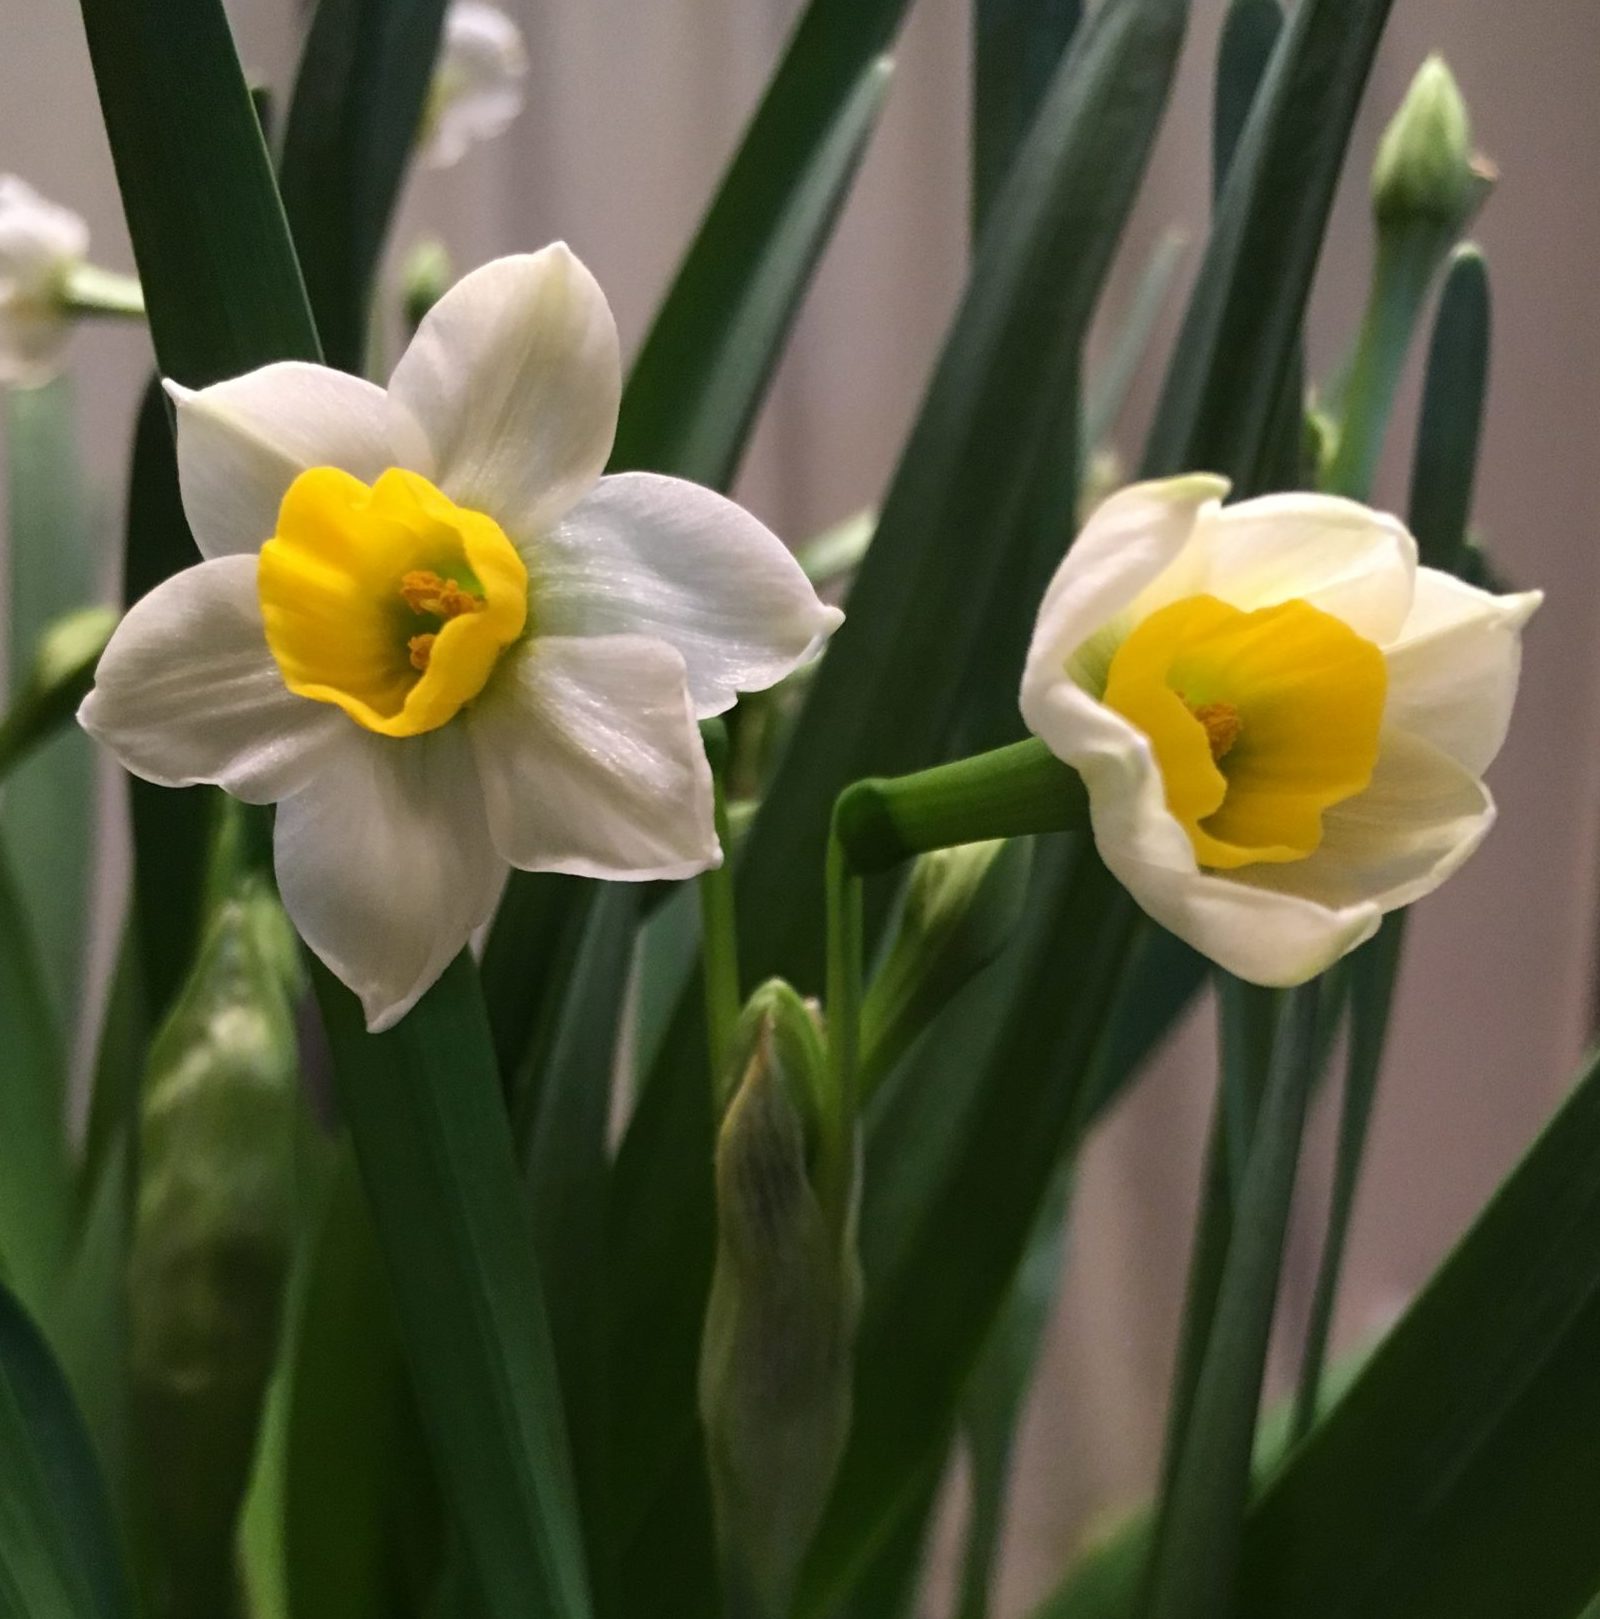 Sacred Lily, aka Narcissus tazetta